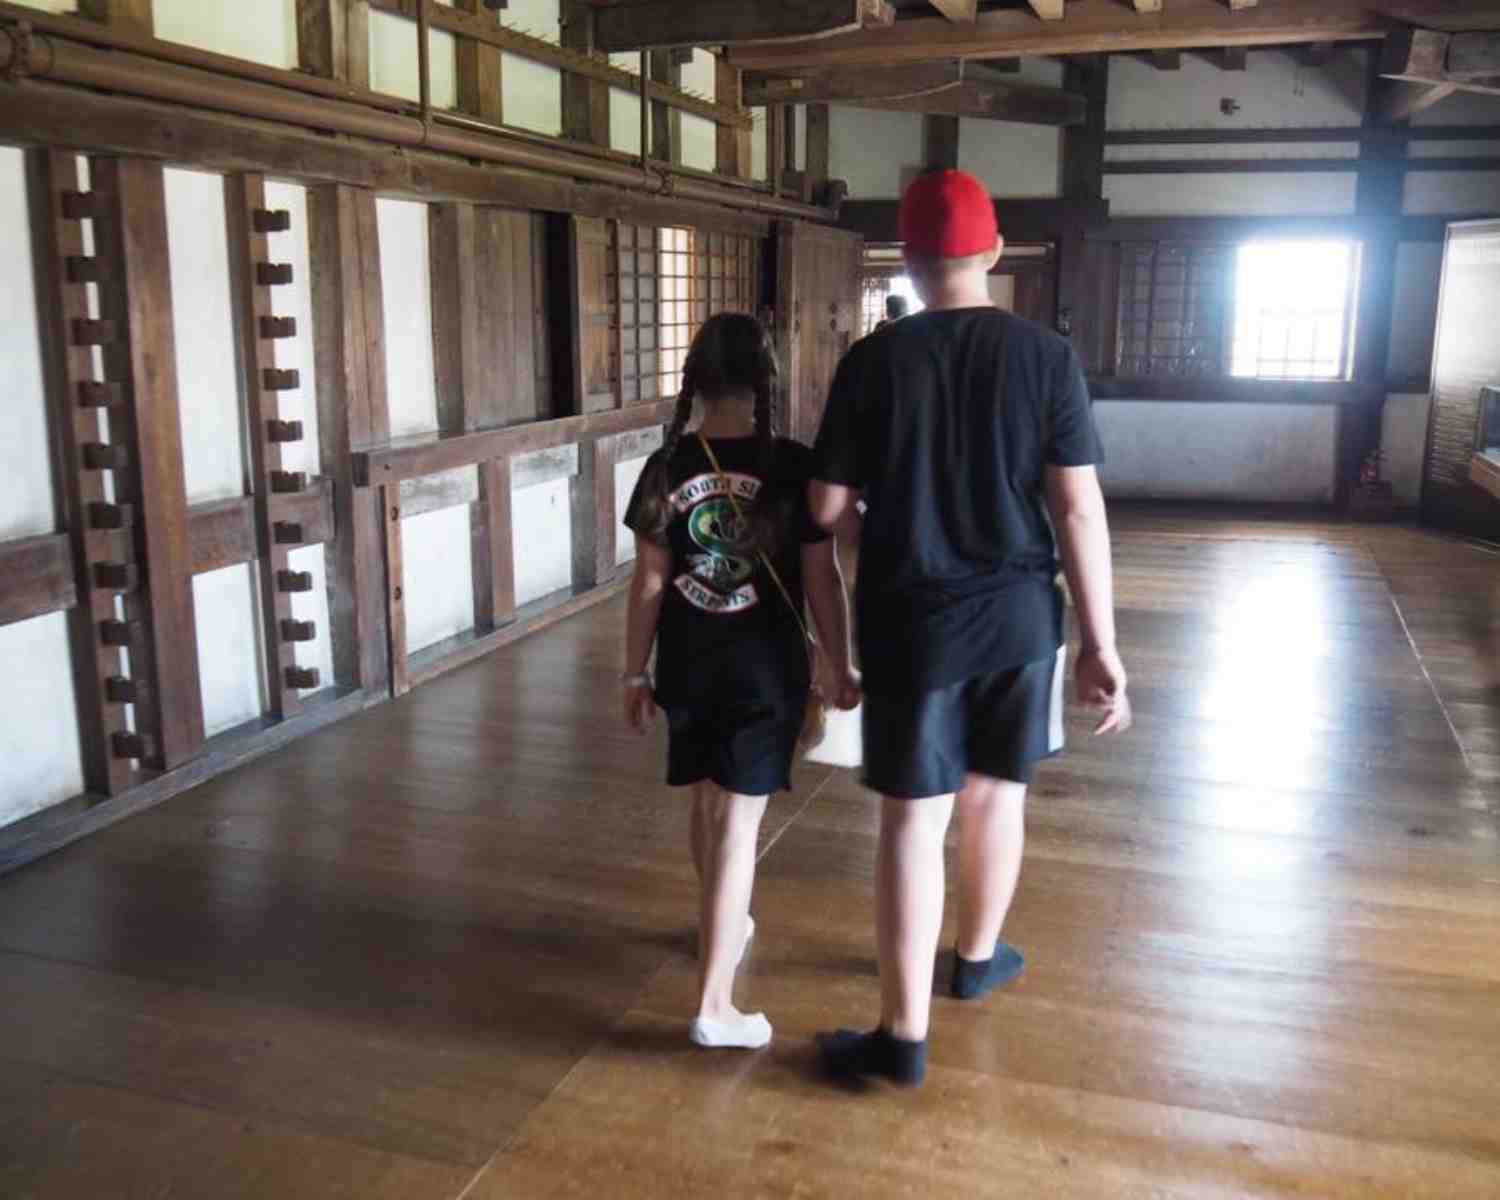 The kids exploring Himeji Castle in Japan